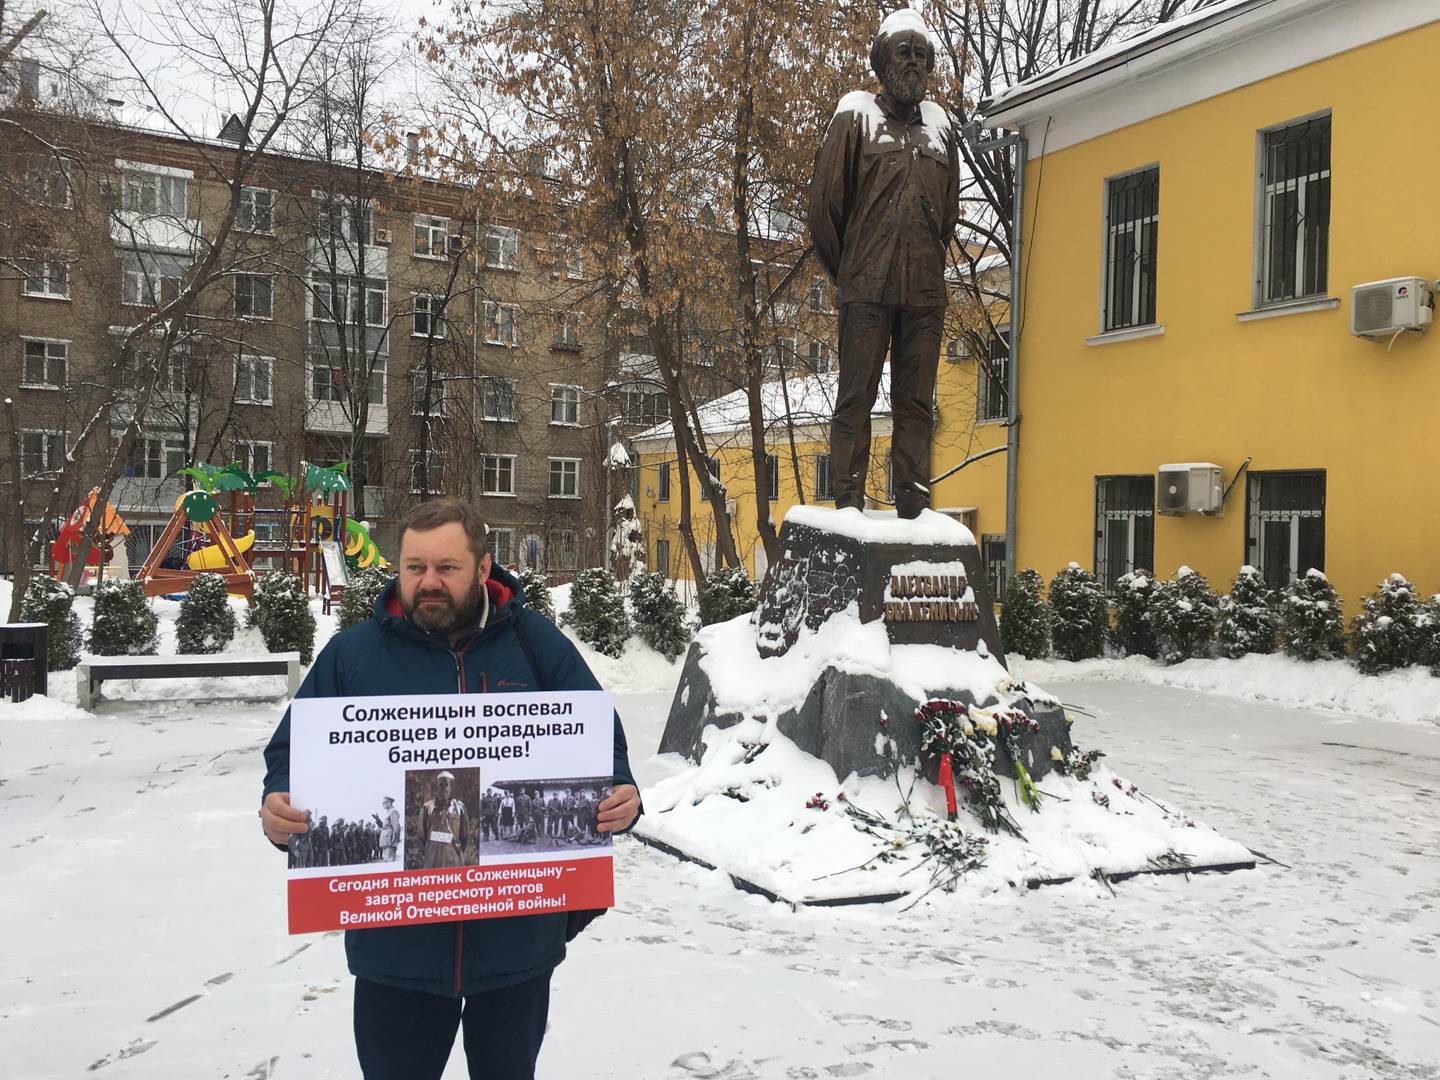 Пикеты у памятника Солженицыну.